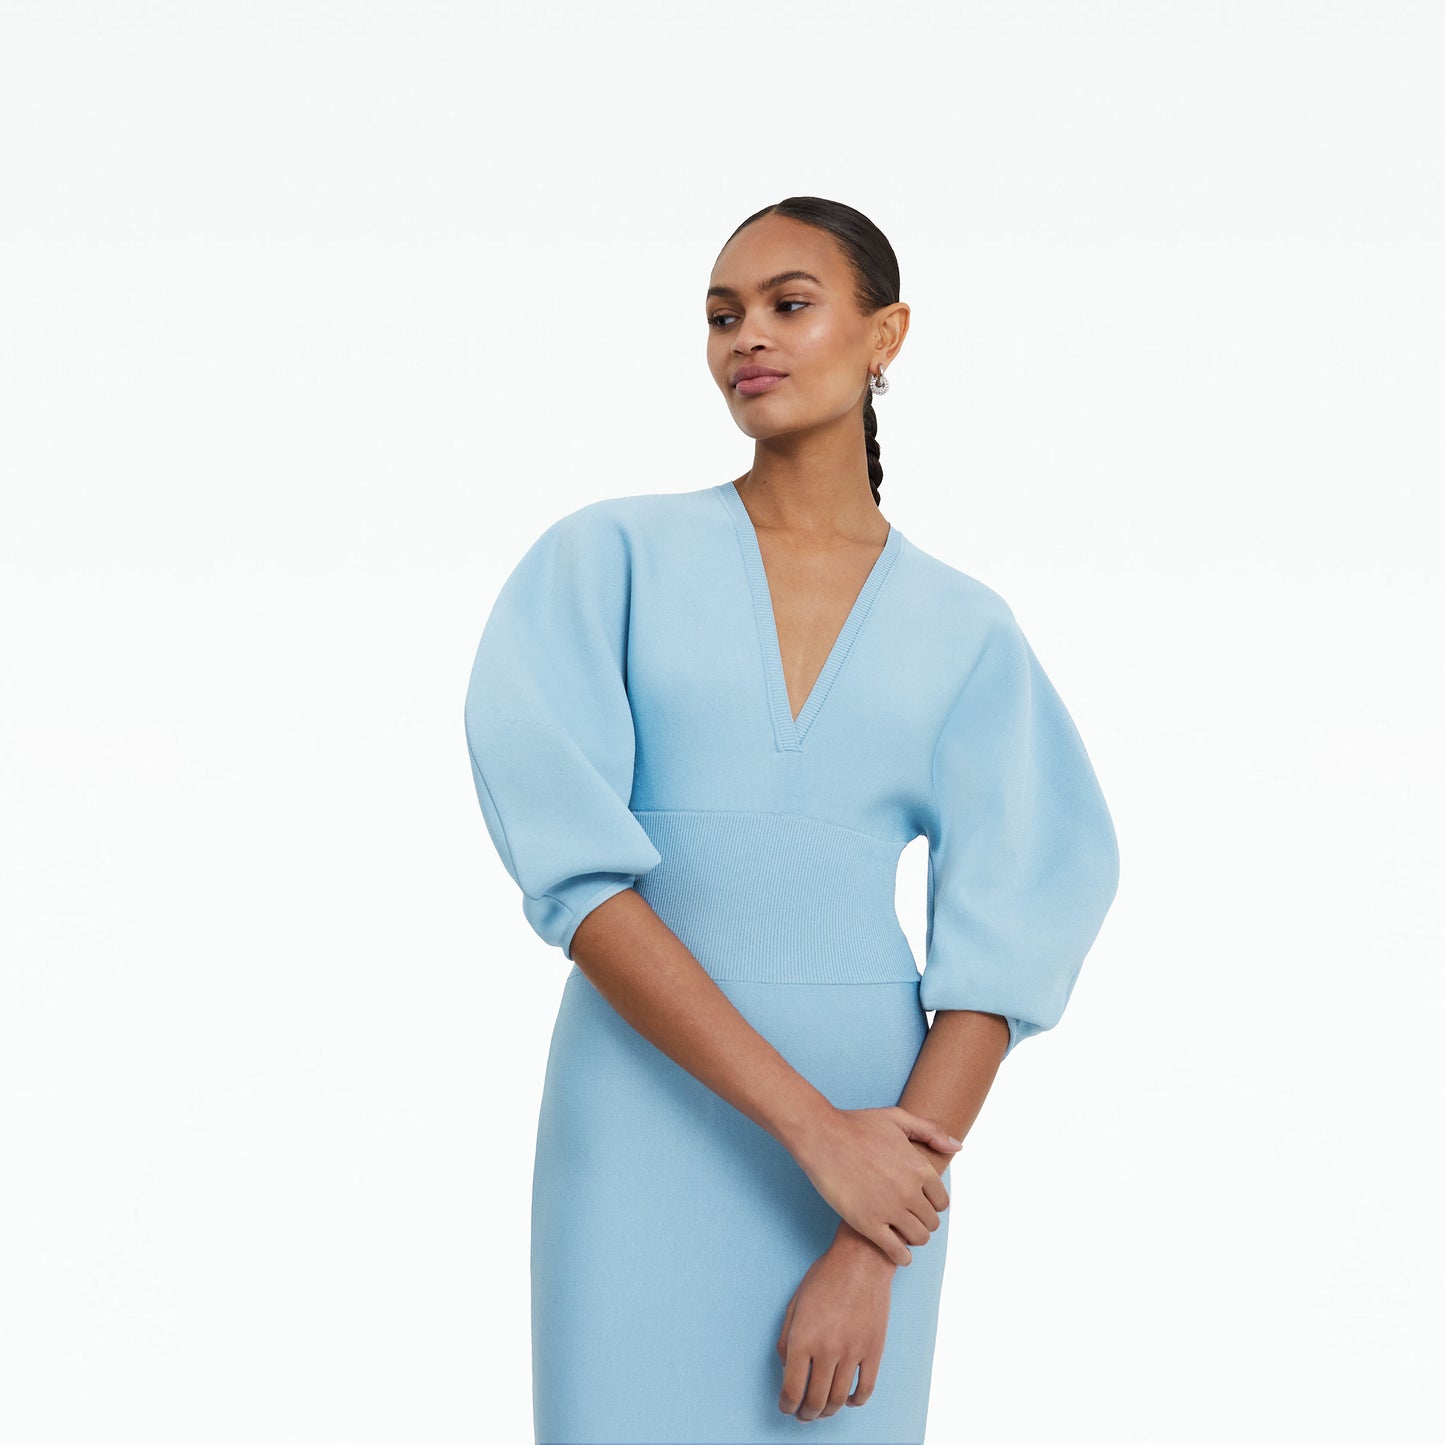 Kiera Pale Blue Knit Midi Dress